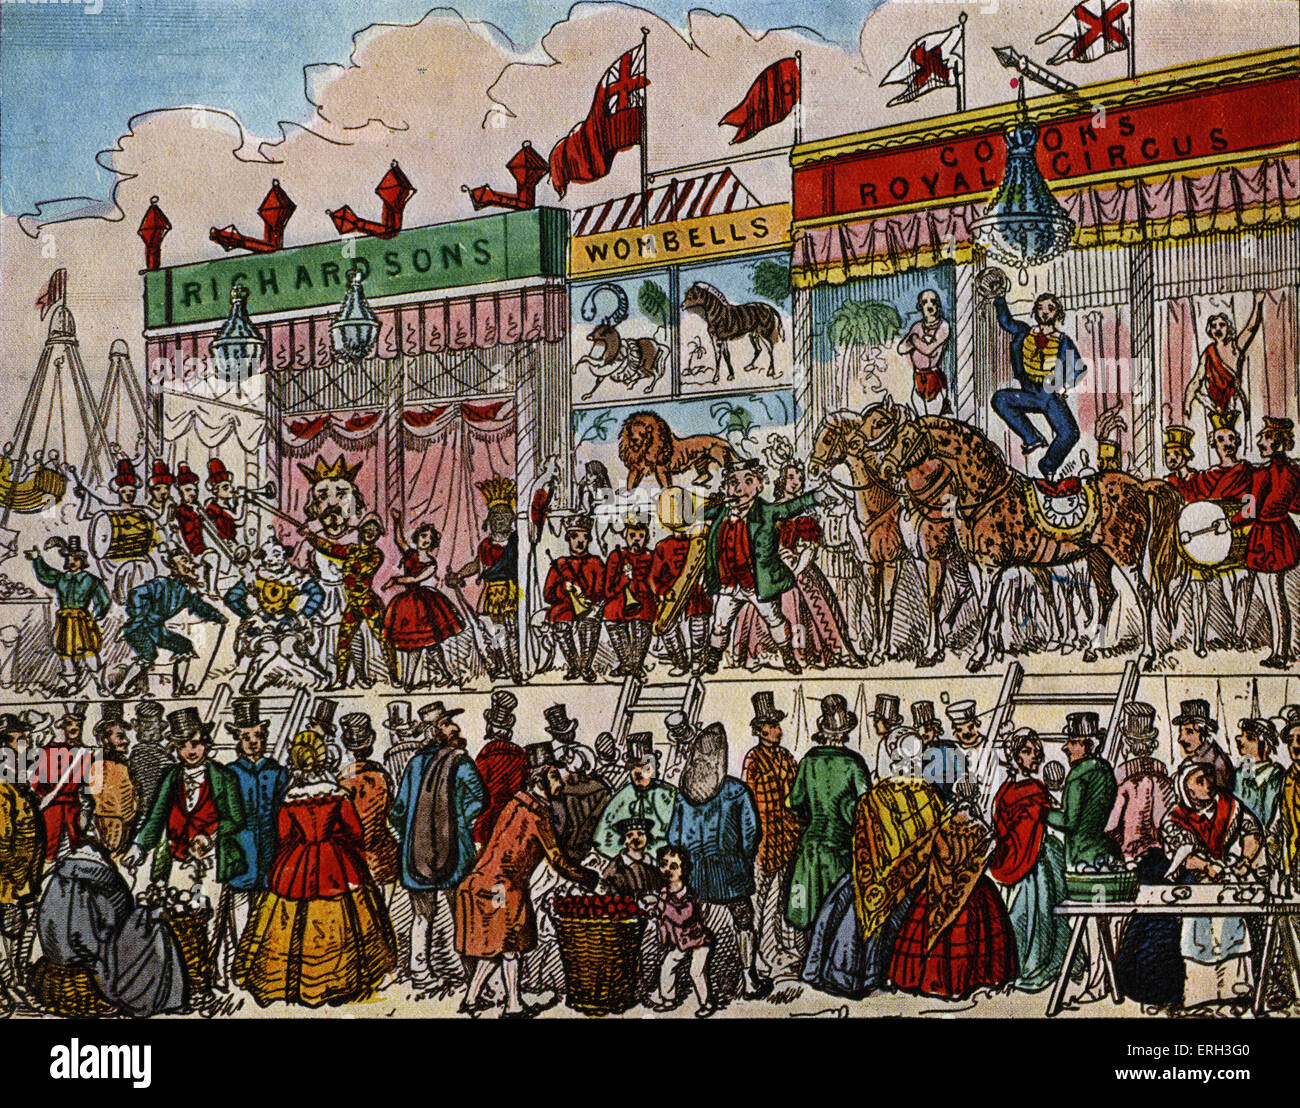 Szenen aus "Harlekin Red Riding-Hood" von Tom Hood.  Publikum beobachtet einen Zirkus auf der Bühne.  TH britischer Humorist und Stockfoto